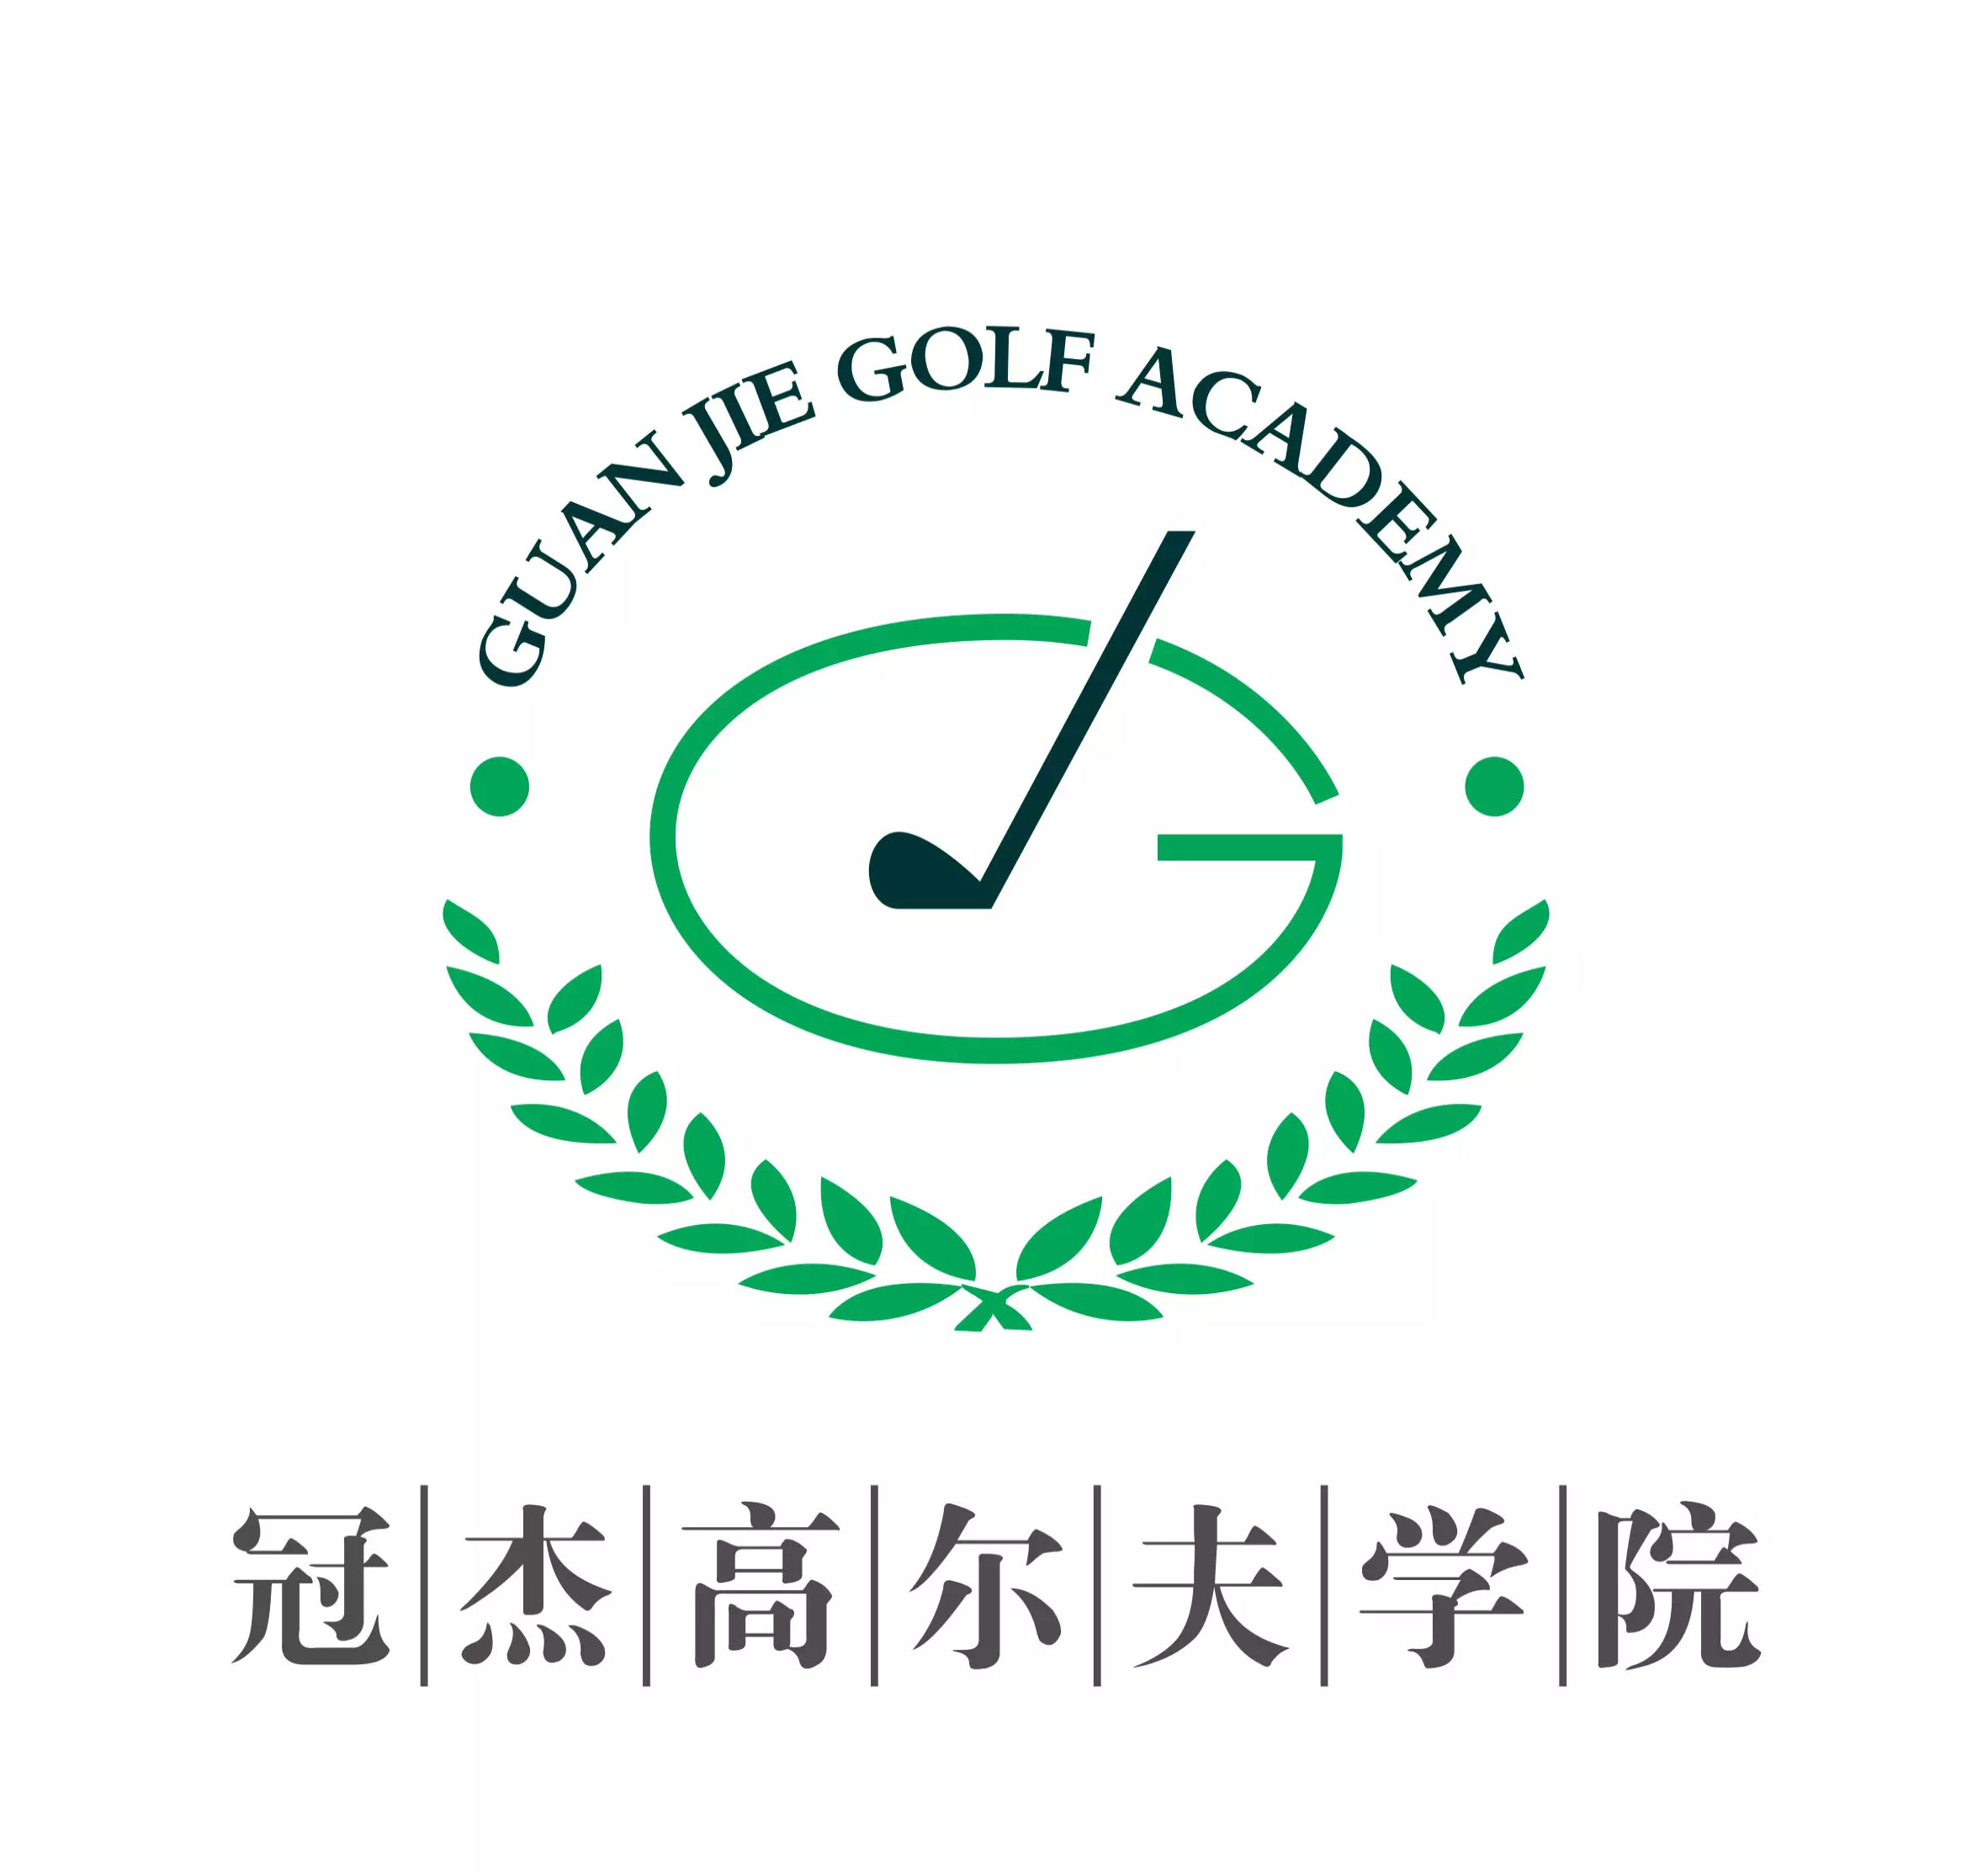 Guan Jie Golf Academy 